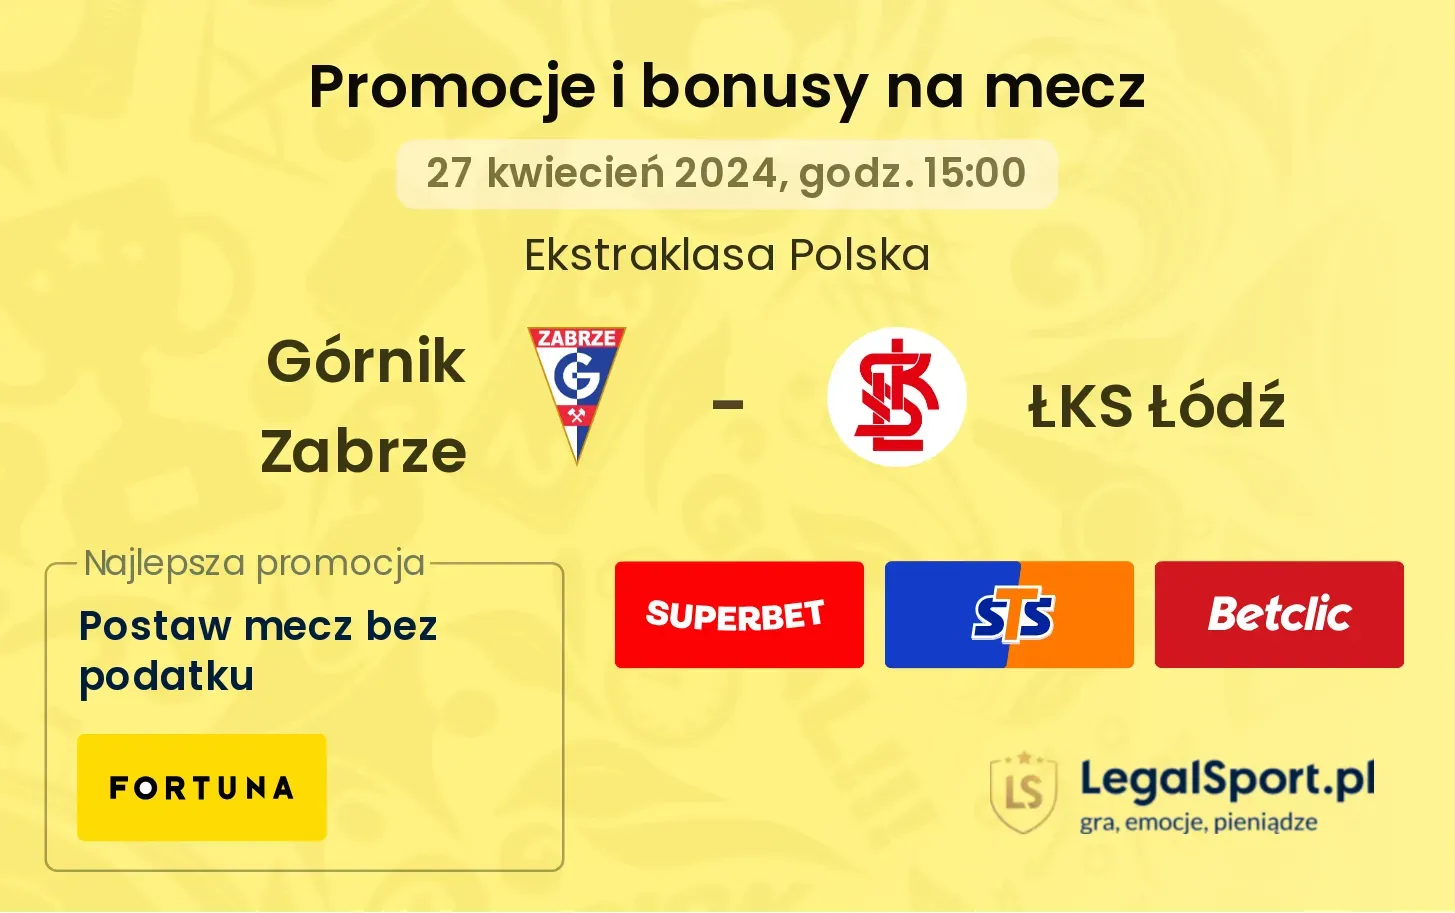 Górnik Zabrze - ŁKS Łódź promocje bonusy na mecz